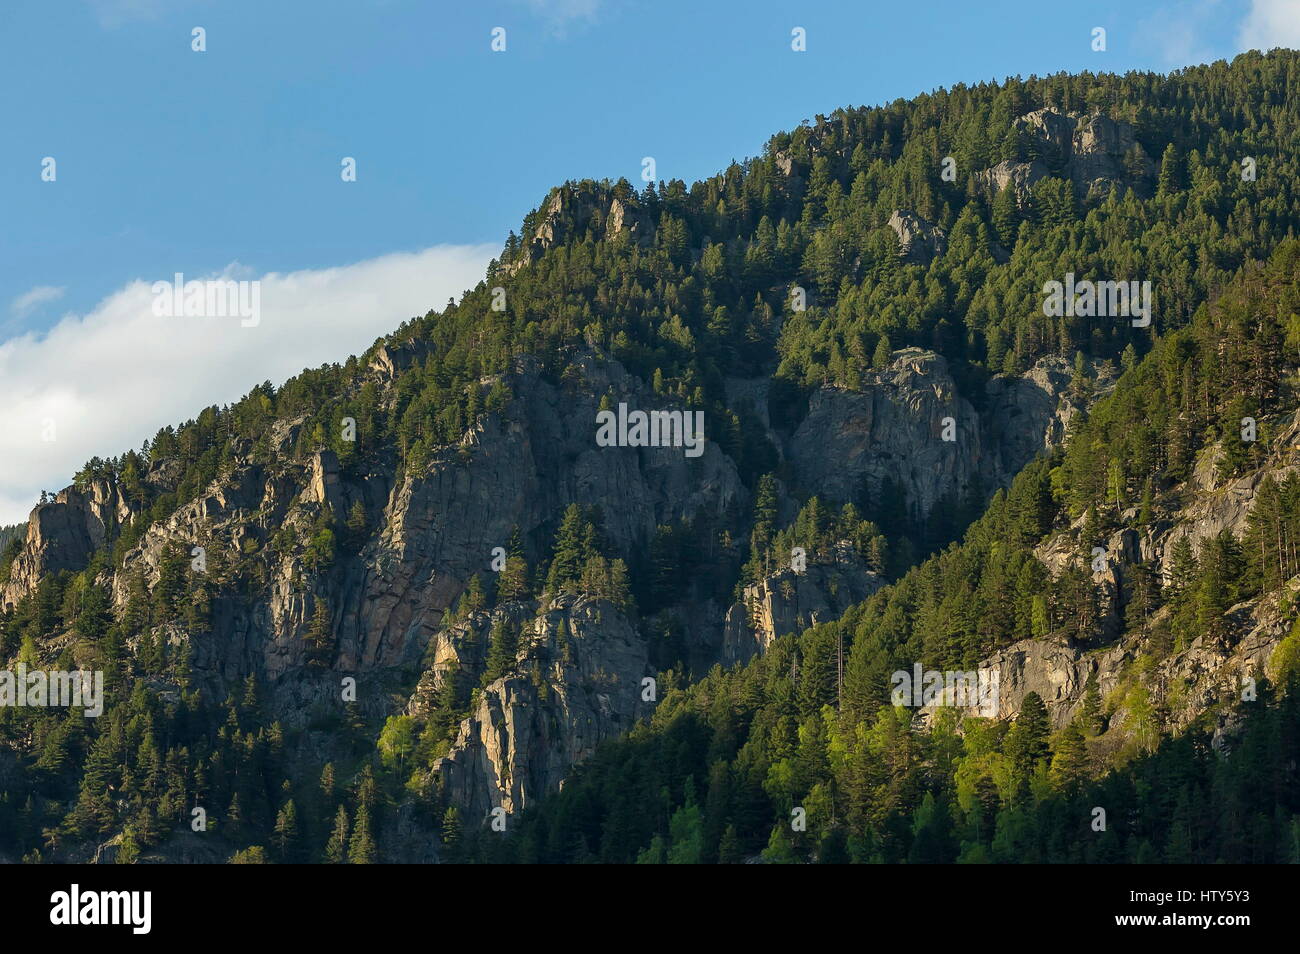 Berggipfel, bewachsen mit hohen Bäumen, Felsen und Lichtung des Rila-Gebirges, Bulgarien Stockfoto